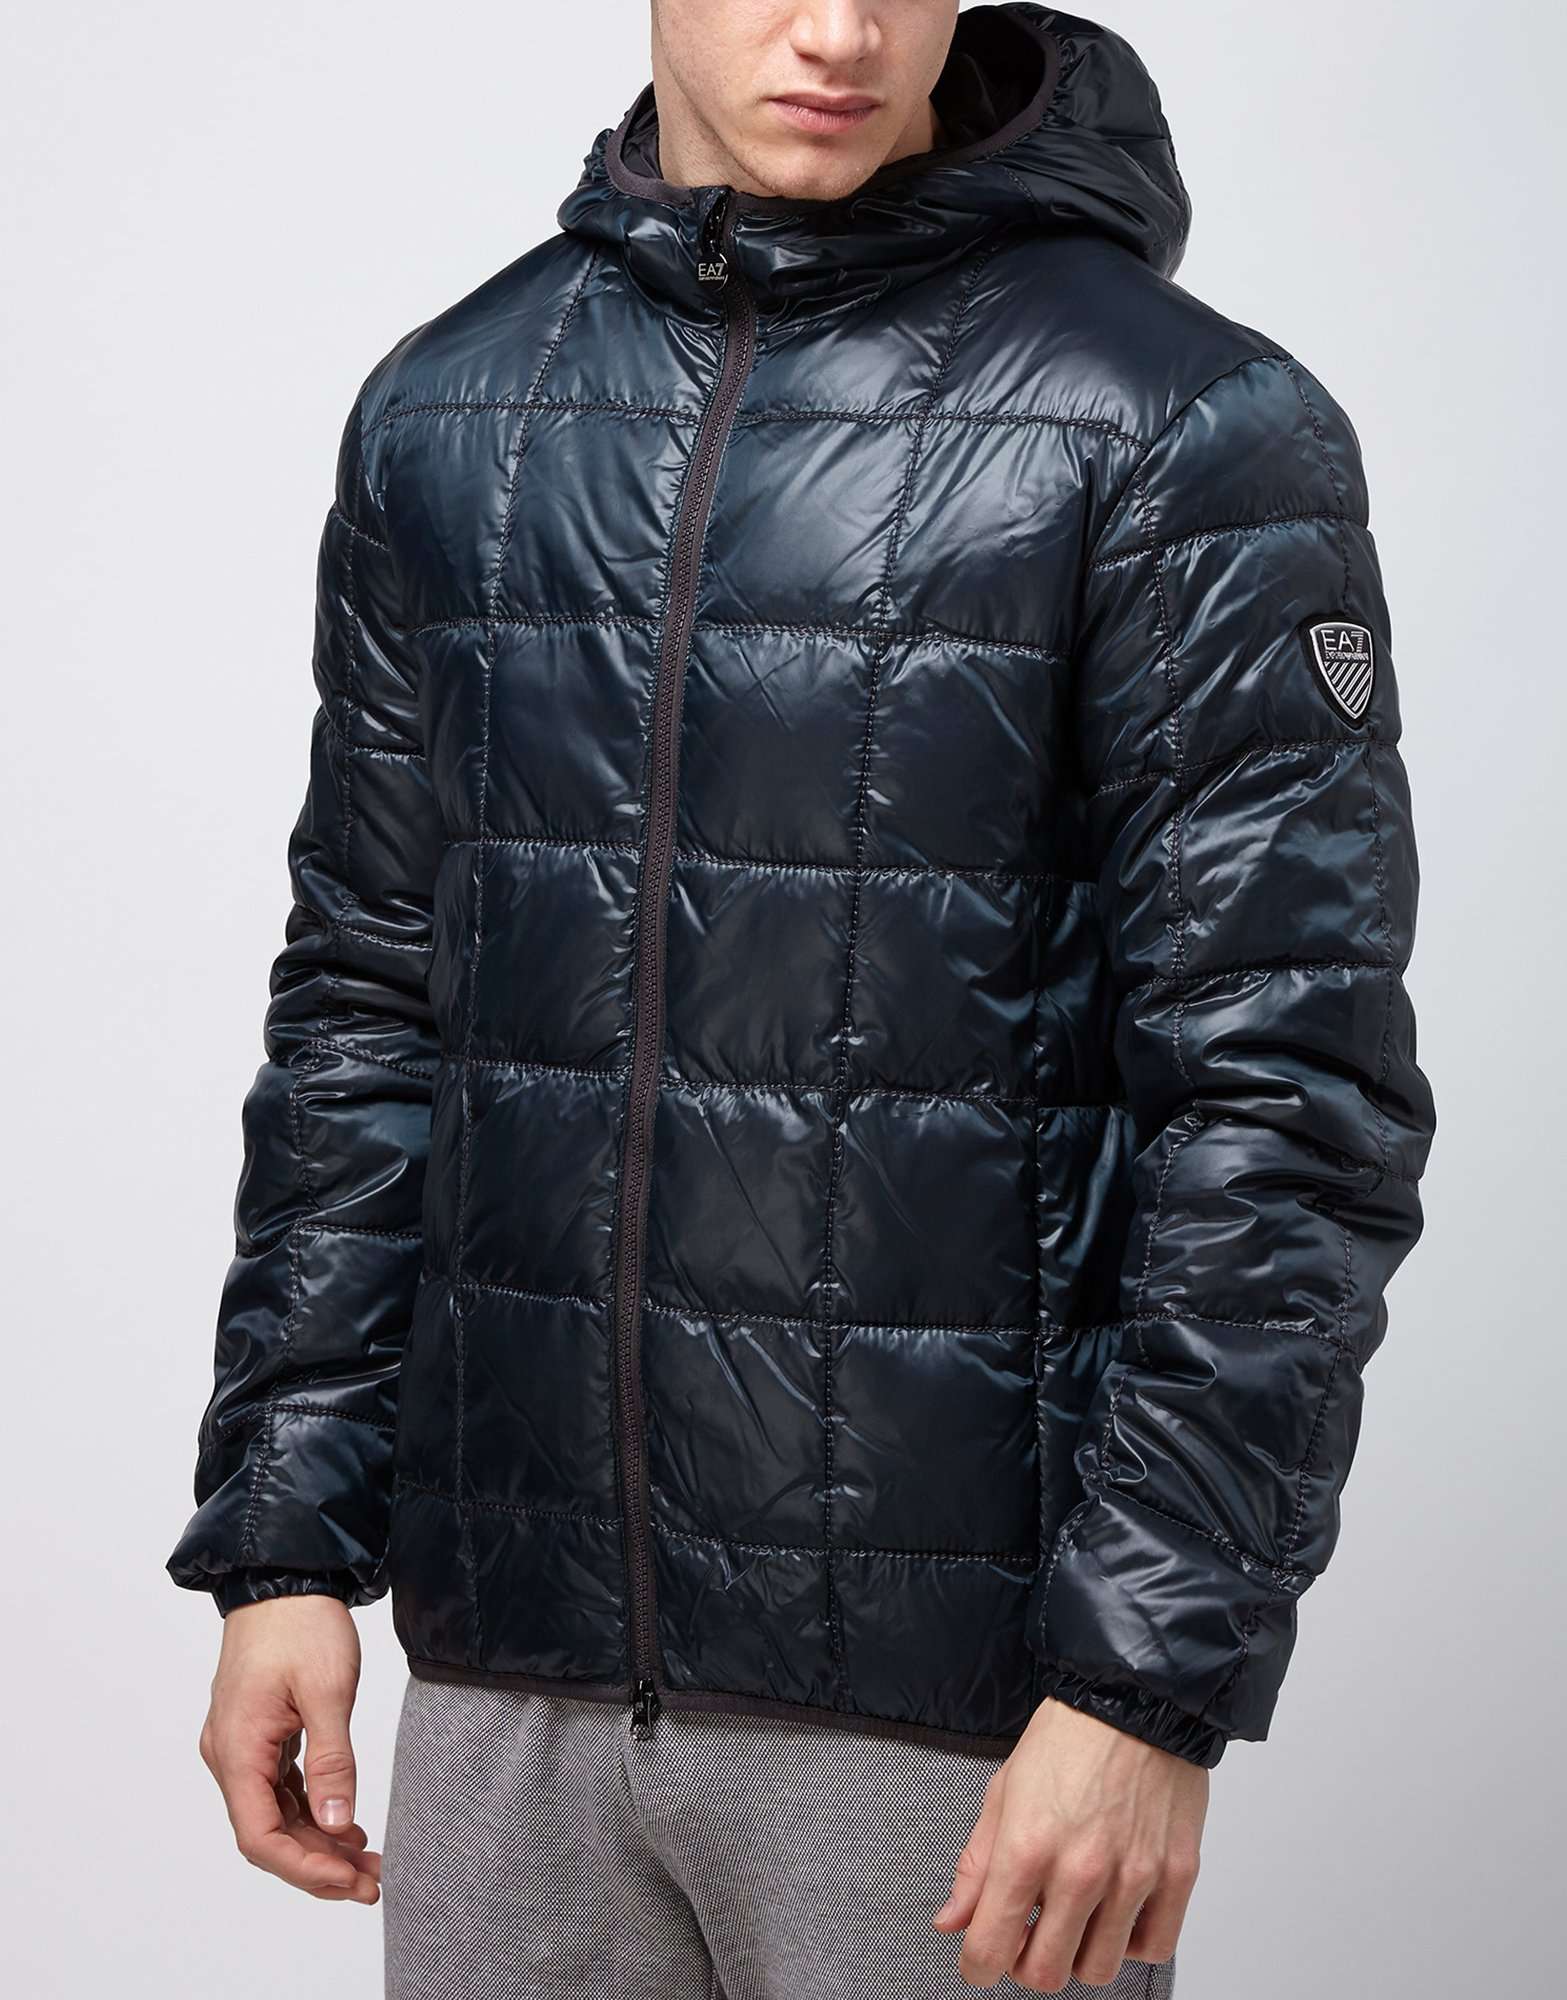 Emporio Armani EA7 Mountain Square Quilt Jacket | scotts Menswear